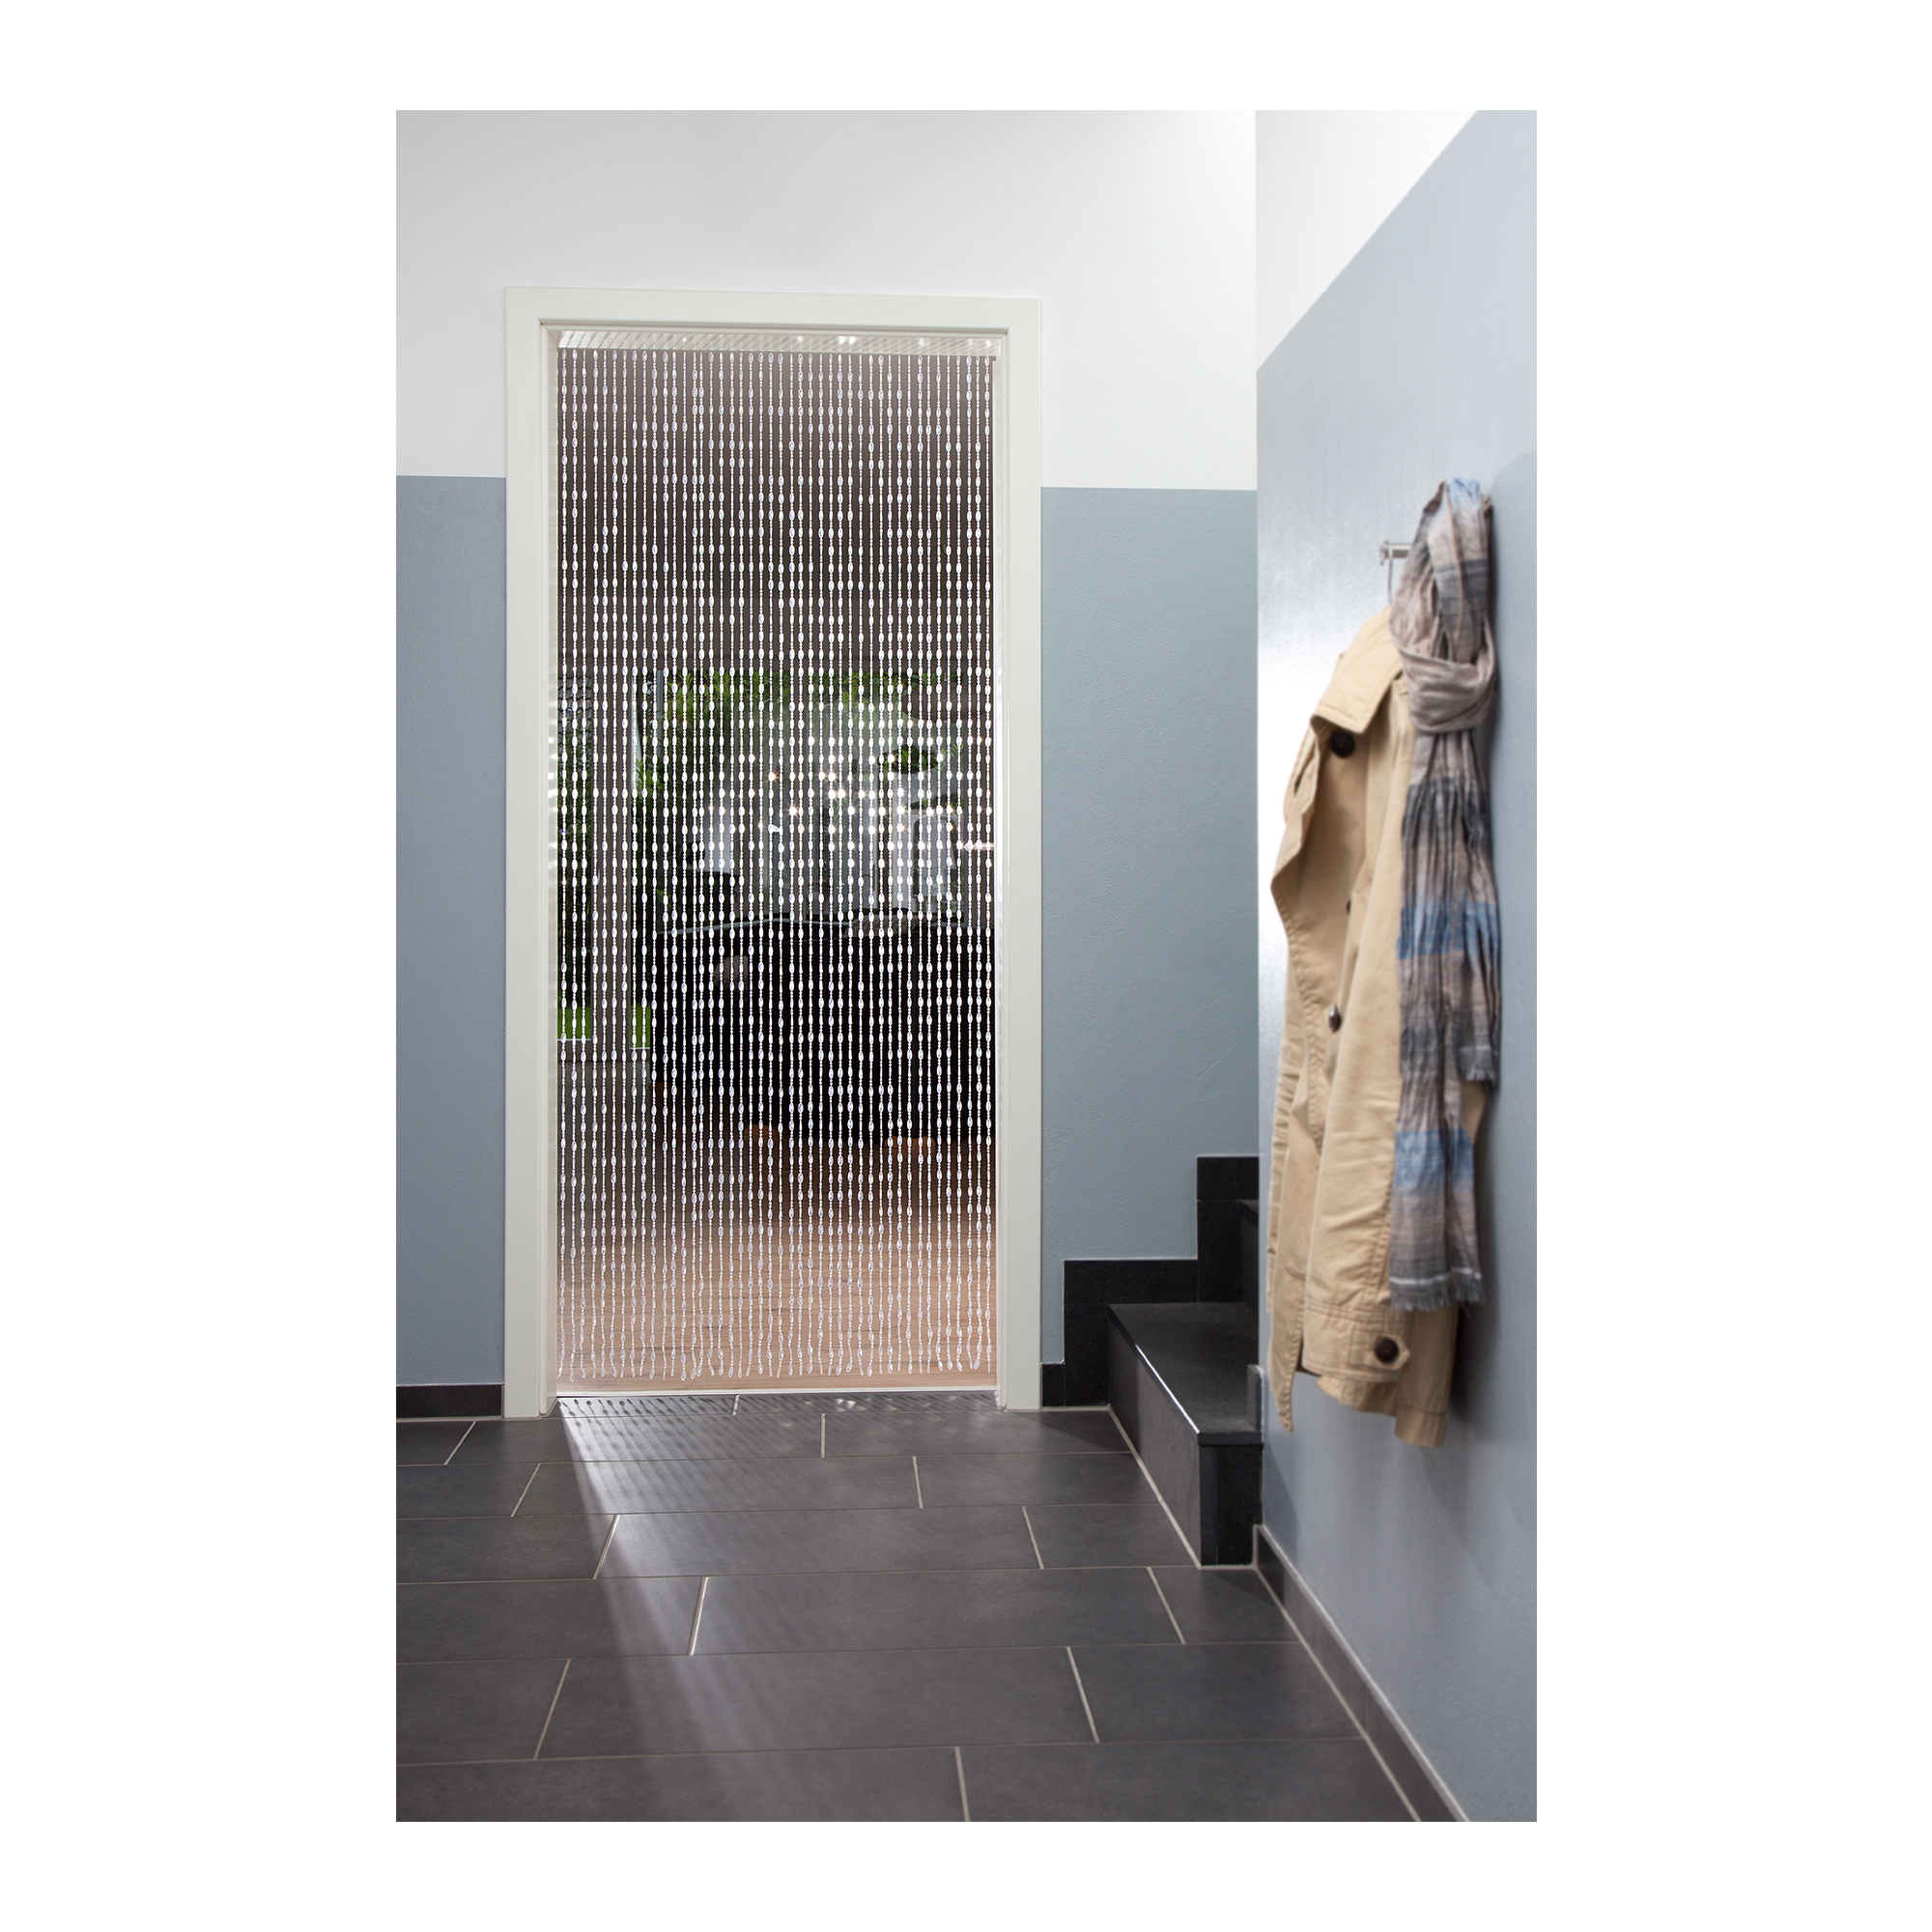 Deko-Vorhang 'Kristal' transparent 200 x 90 cm mit Aufhängeleiste + product picture